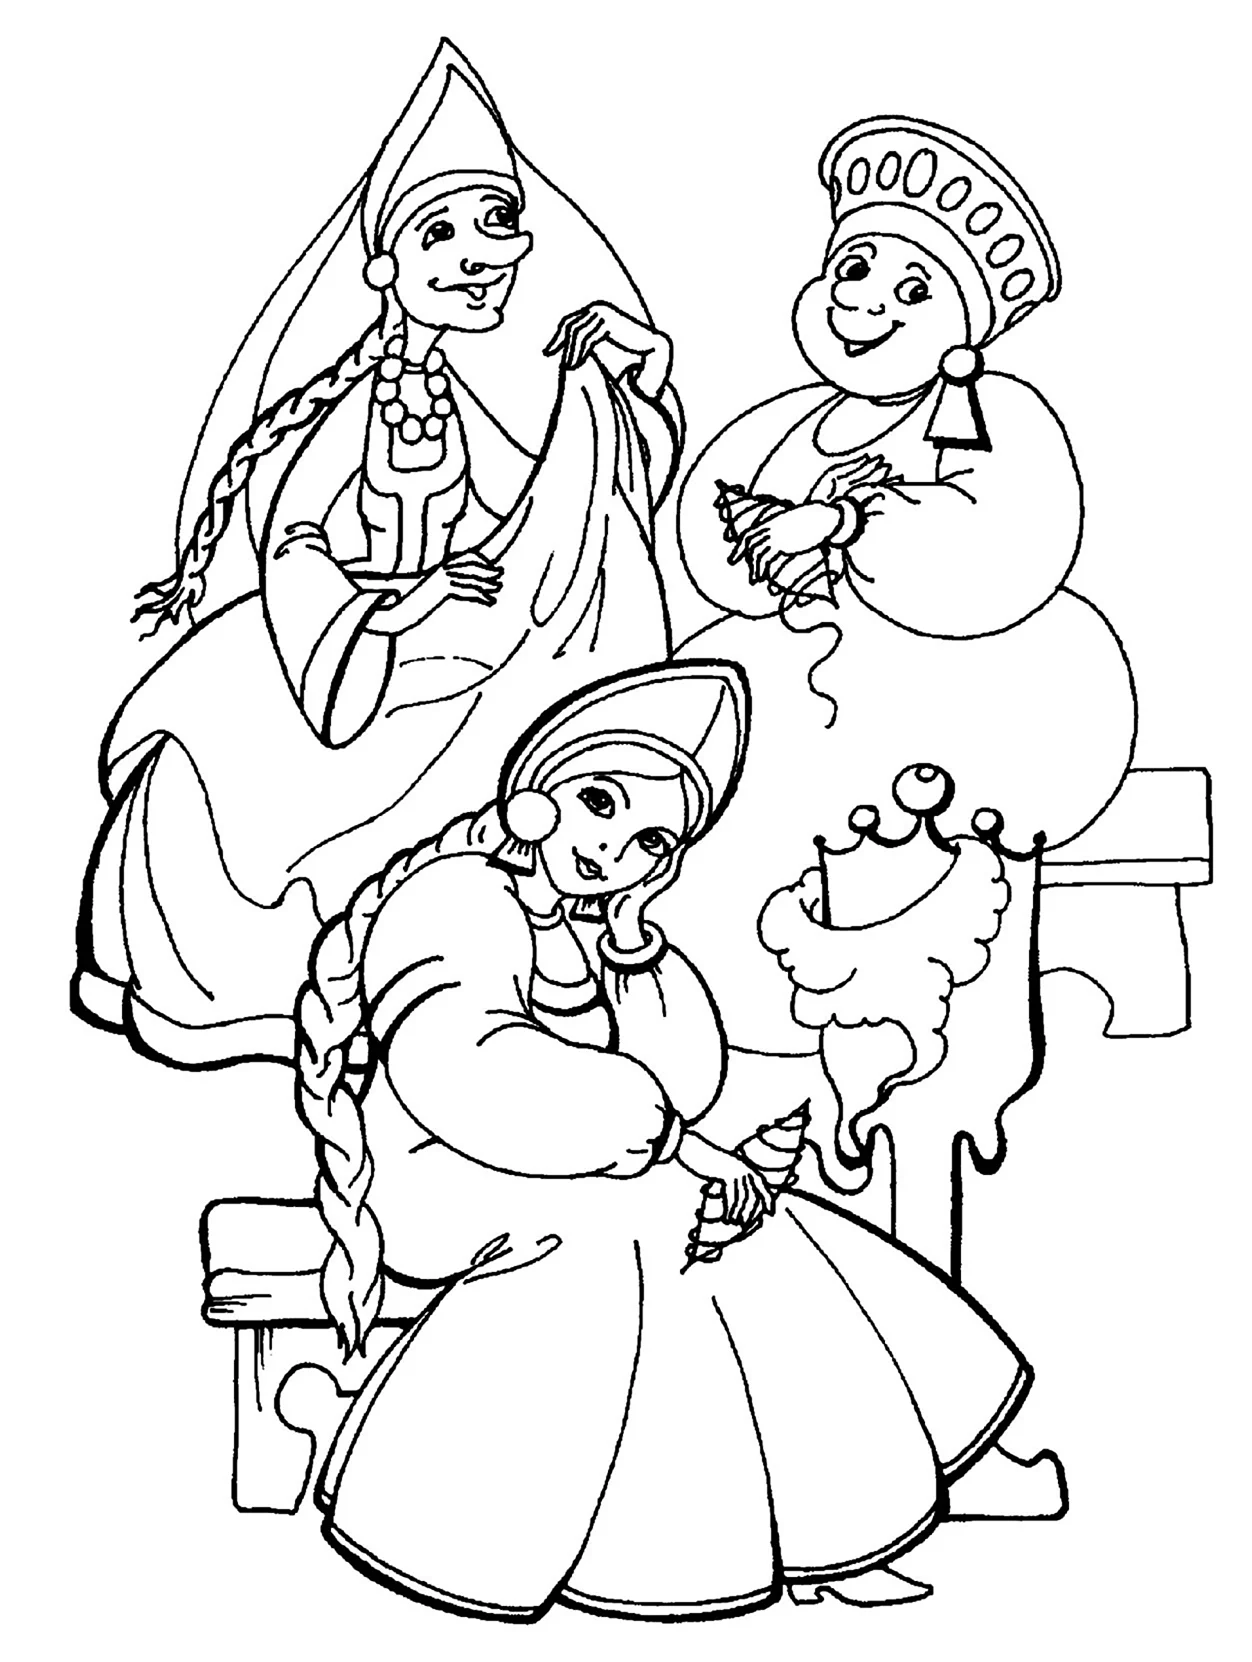 Сказка о царе Салтане три девицы раскраска. Для срисовки